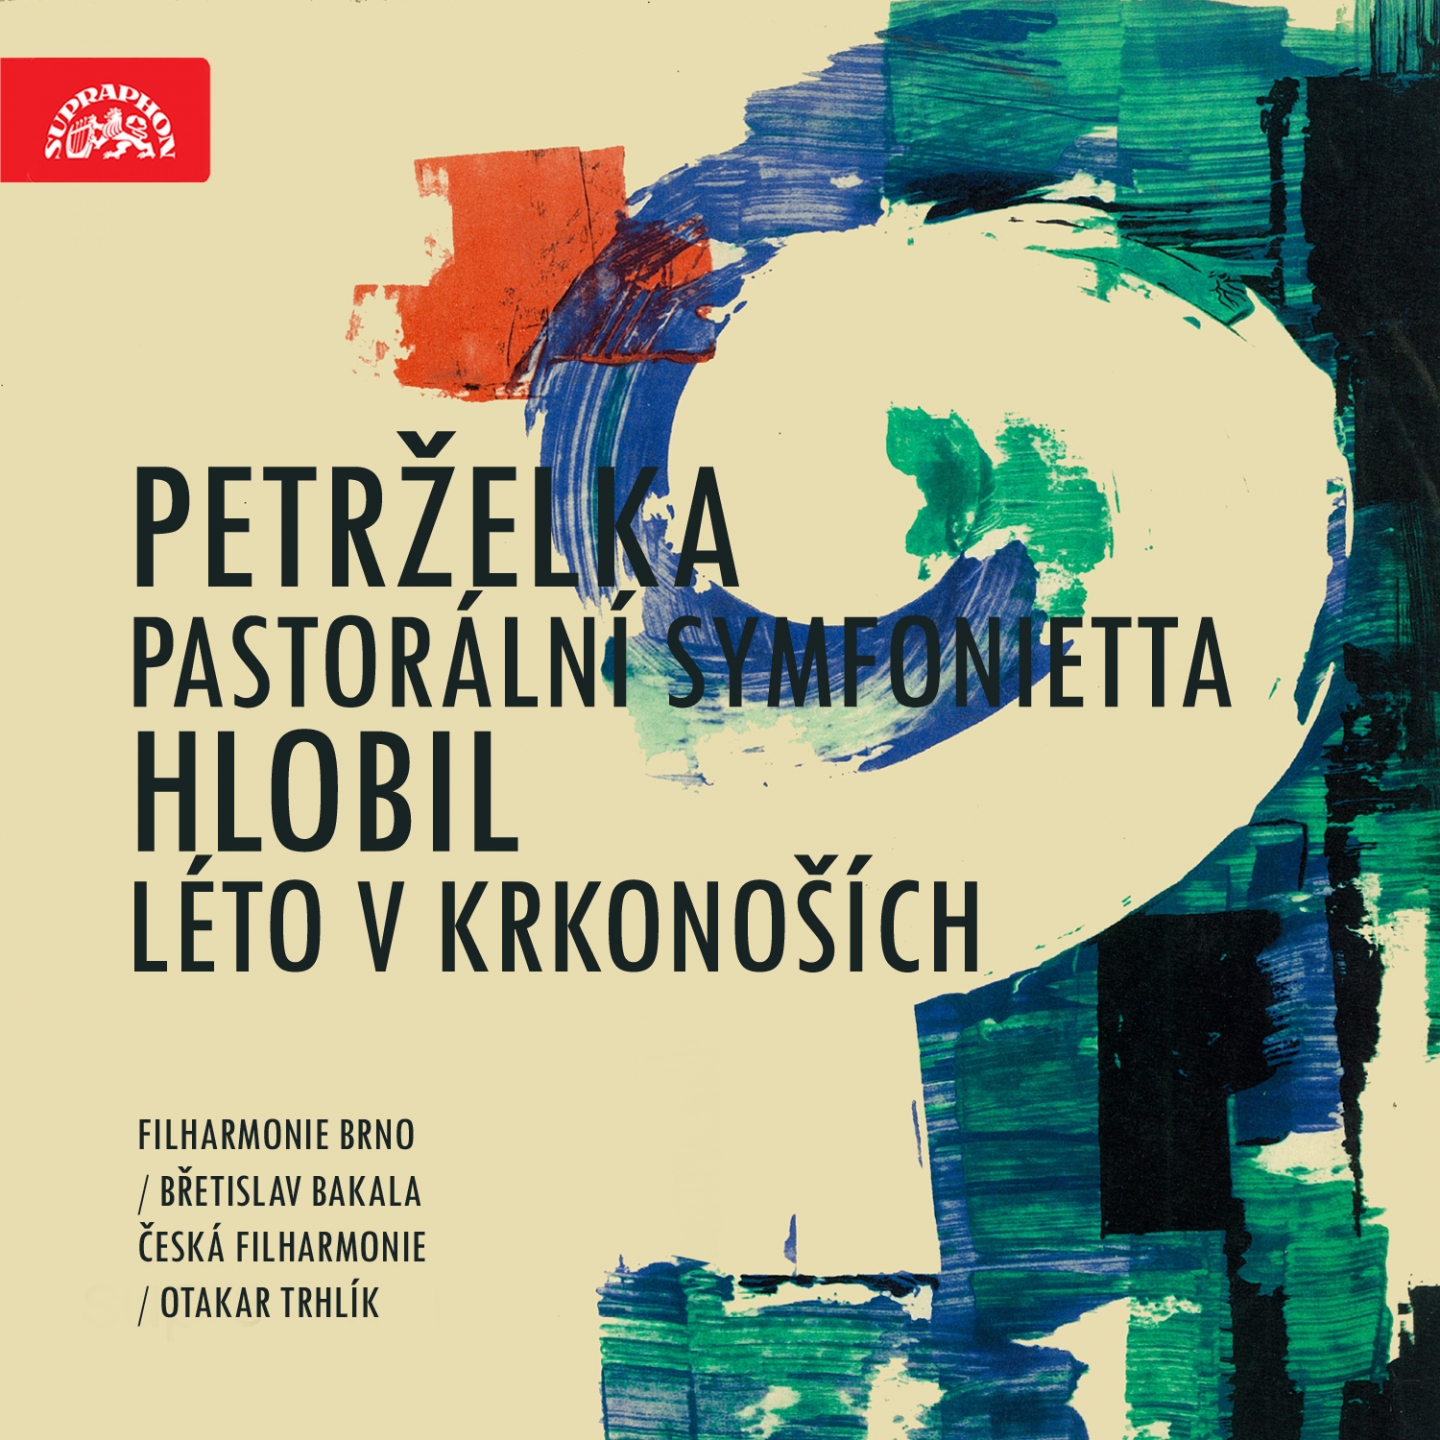 Summer in Krkono e, Op. 33, .: Velebnost v in na Vysoke m kole. Allegro maestoso